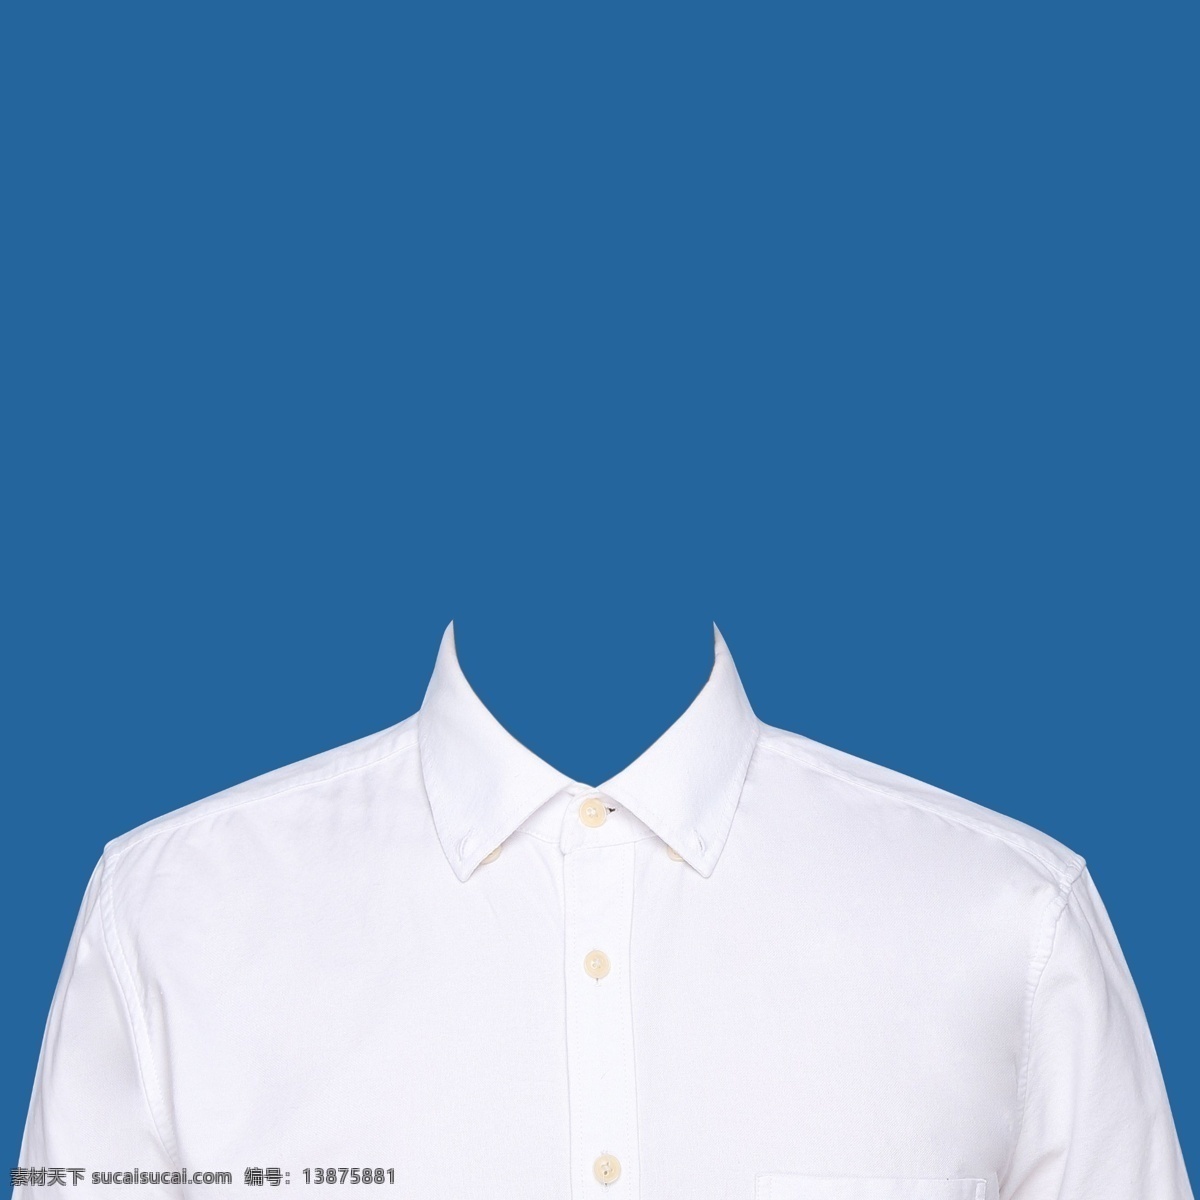 男士 白色 衬衫 证件 素材图片 男士白色衬衫 证件照衣服 青年衬衫 高清白色衬衫 证件照衬衫 衬衫图片